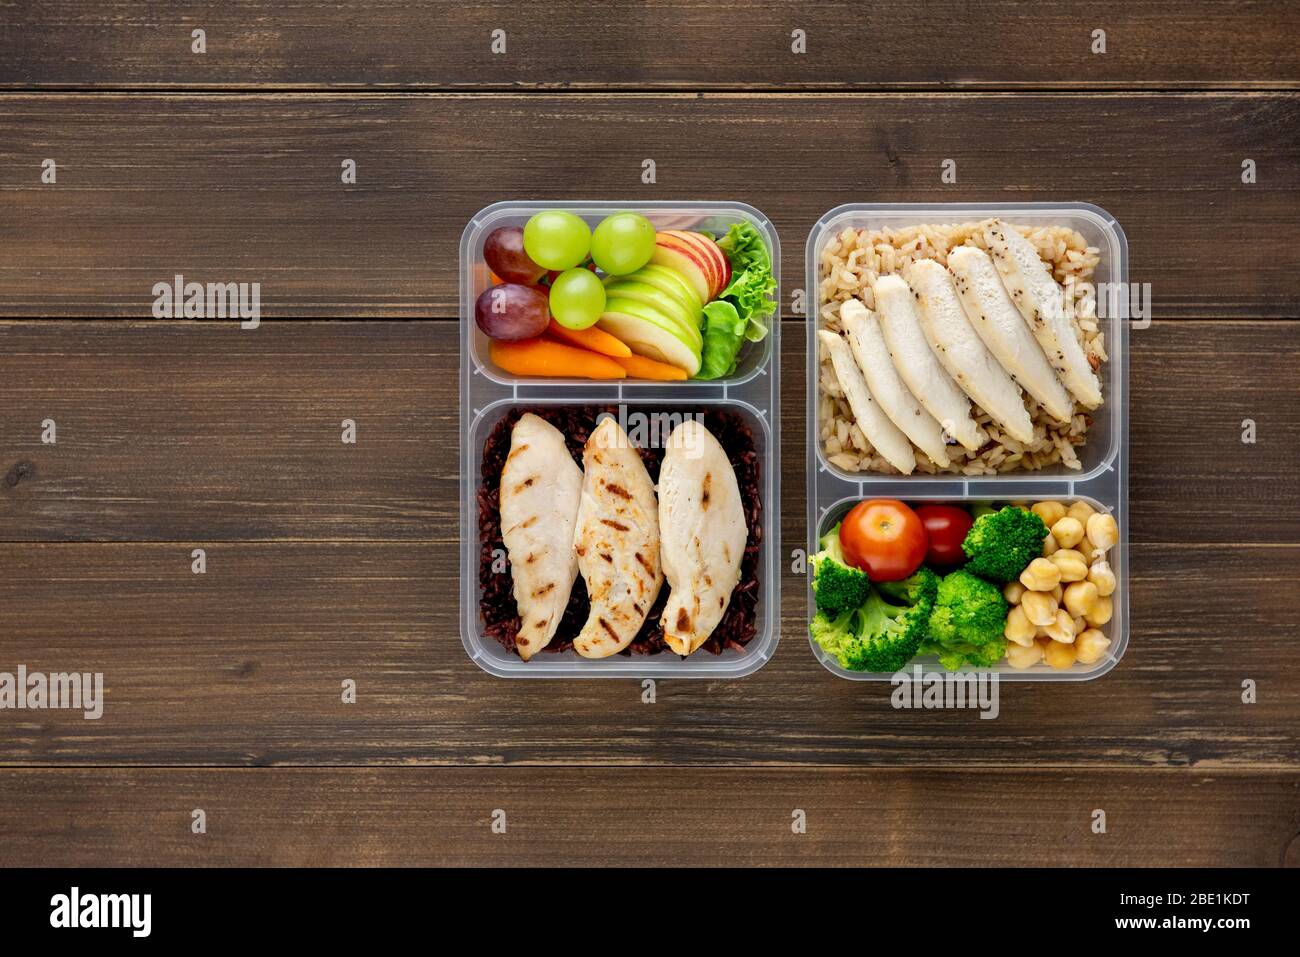 Nährstoff reich gesunde fettarme Lebensmittel in Essen zum Mitnehmen Box setzt auf Holz Hintergrund Draufsicht mit Kopierraum Stockfoto